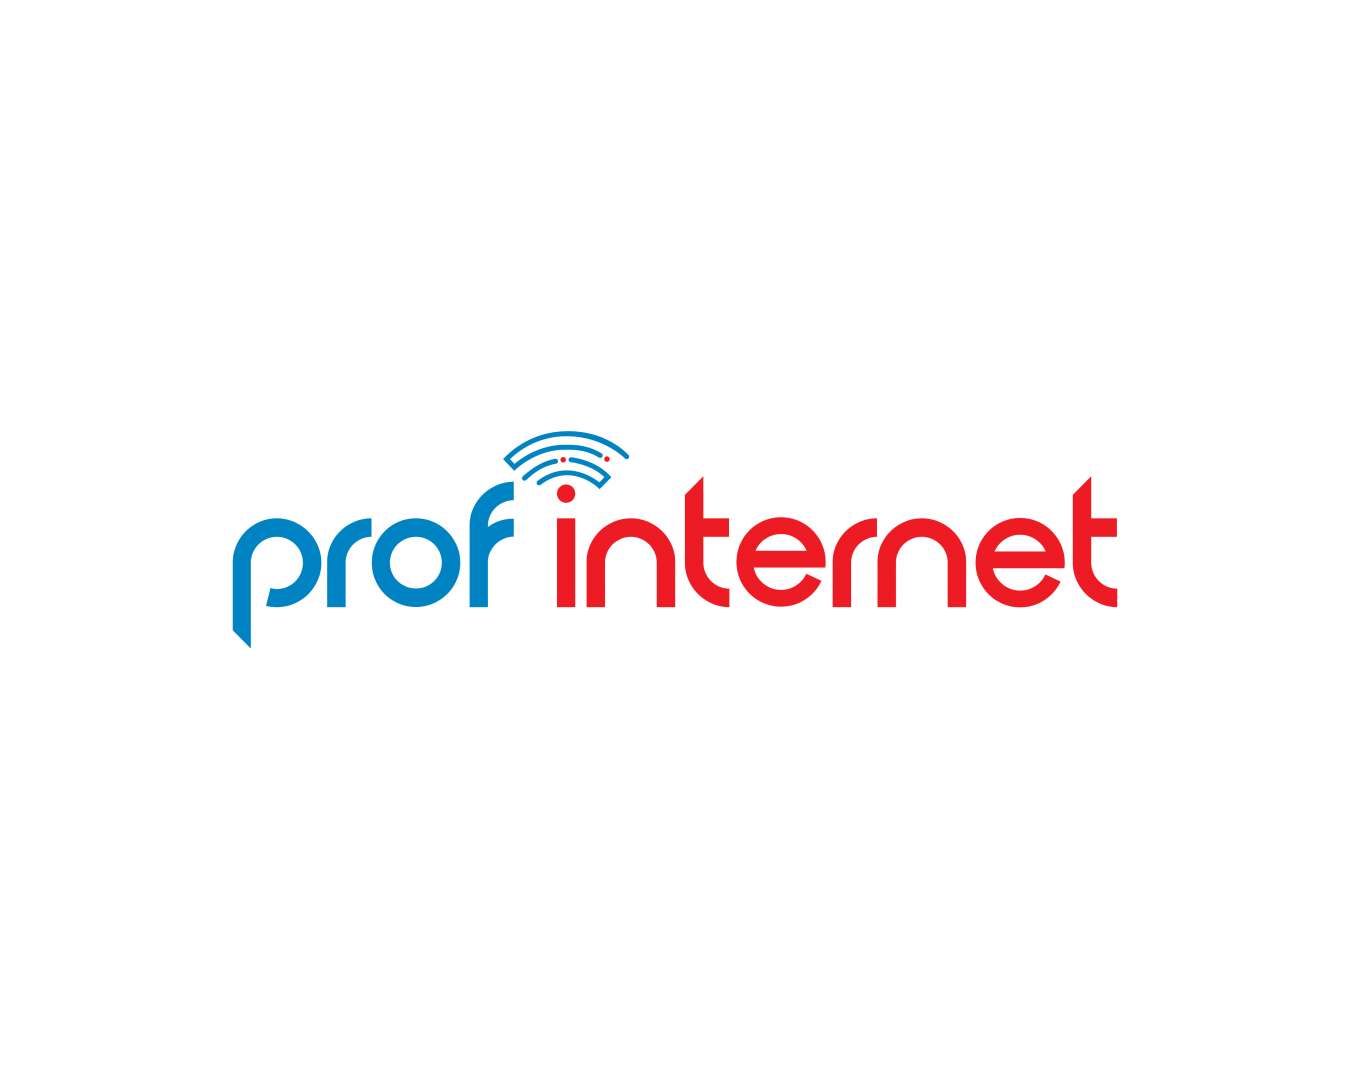 Провайдеры интернета в спб по адресу. Интернет провайдеры СПБ. Lemax Prof логотип. Pin интернет провайдер СПБ. Профф логотип.